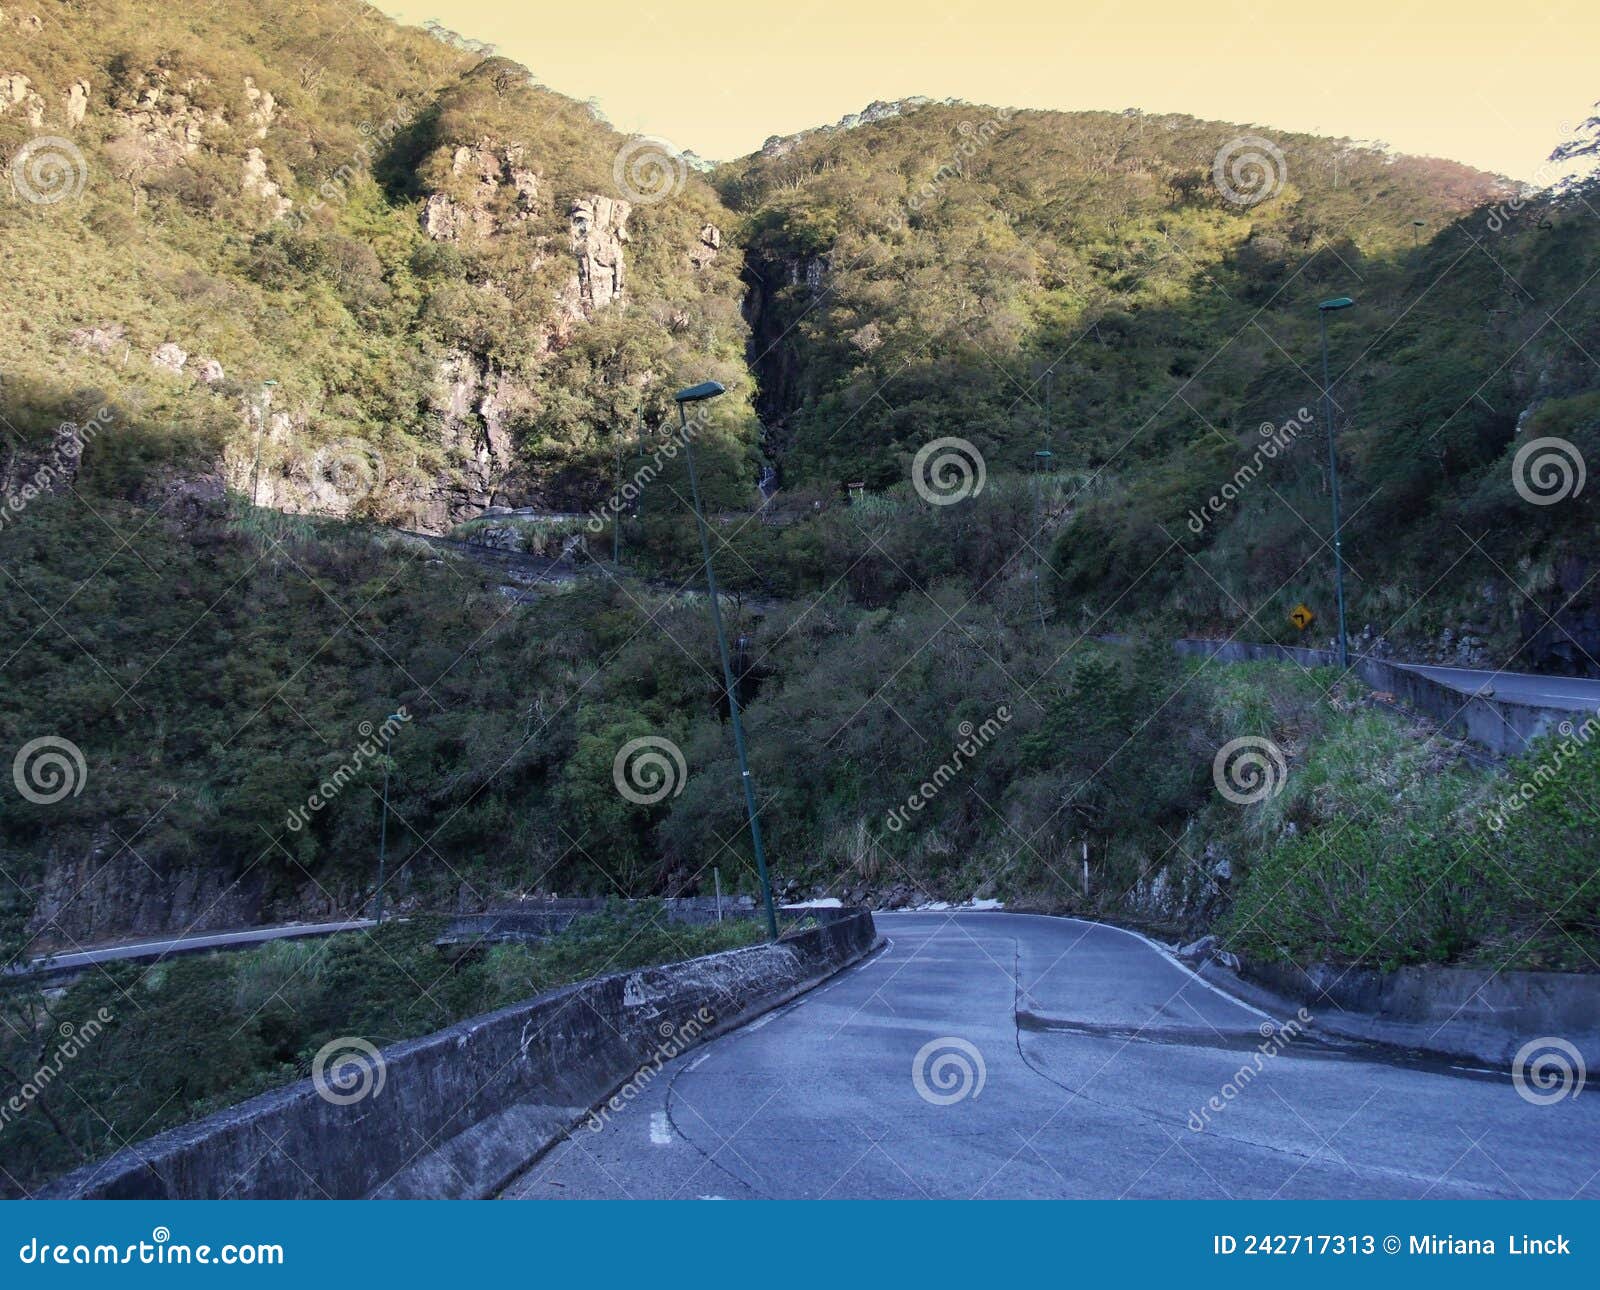 road in mountains in serra do rio do rastro , brazil